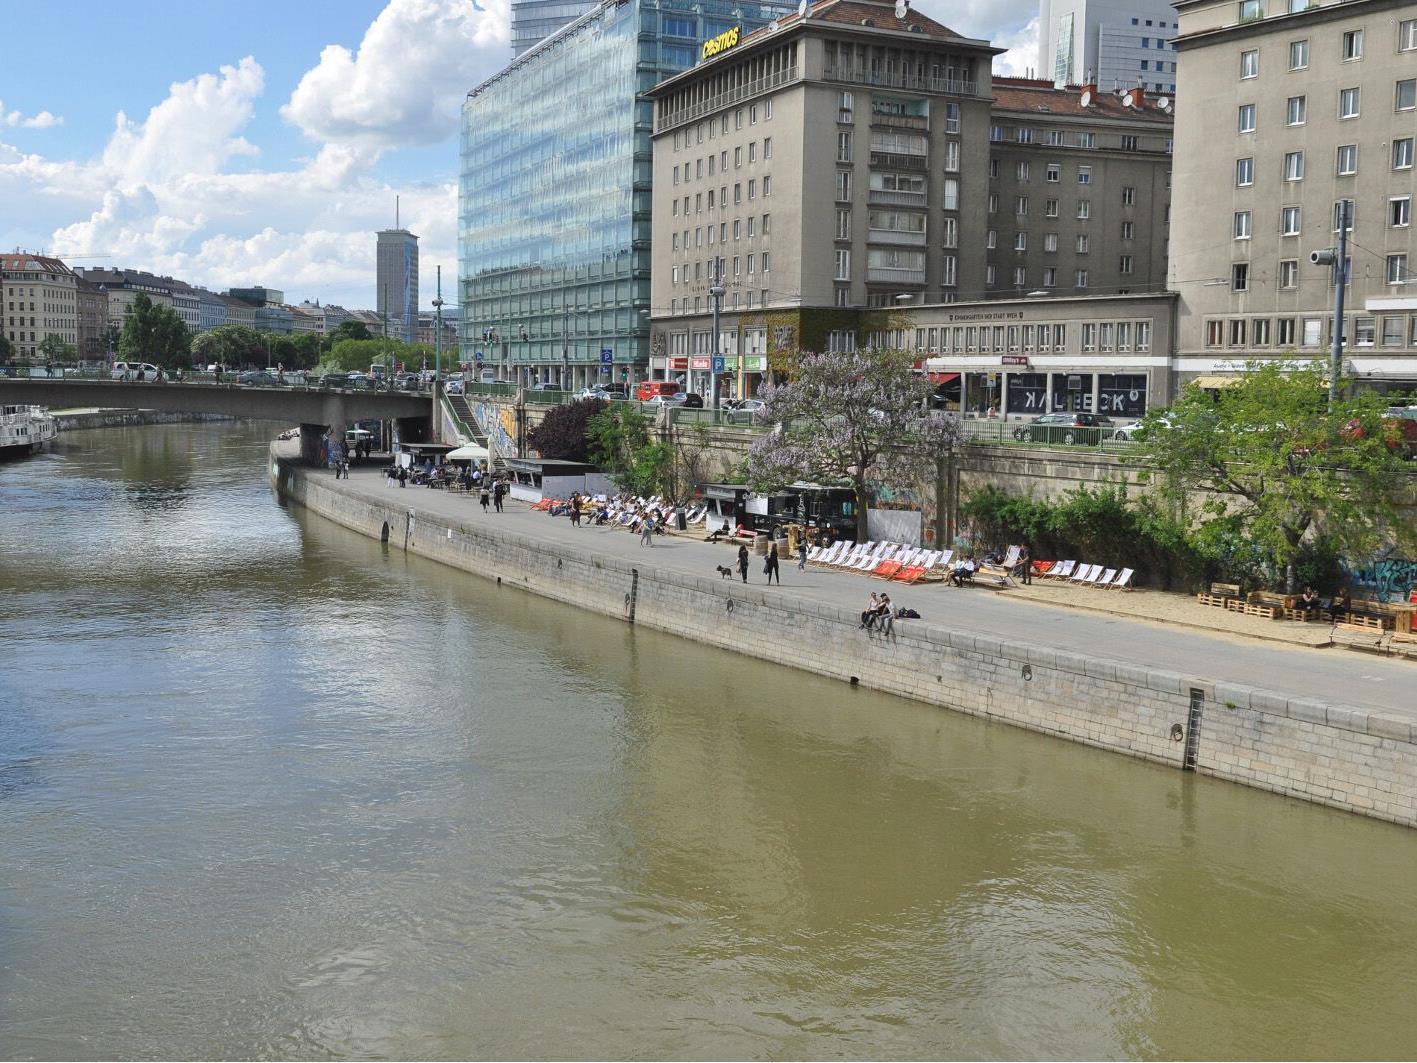 Trotz seines Sprung in den Donaukanal konnte die Polizei den Verdächtigen schließlich festnehmen.